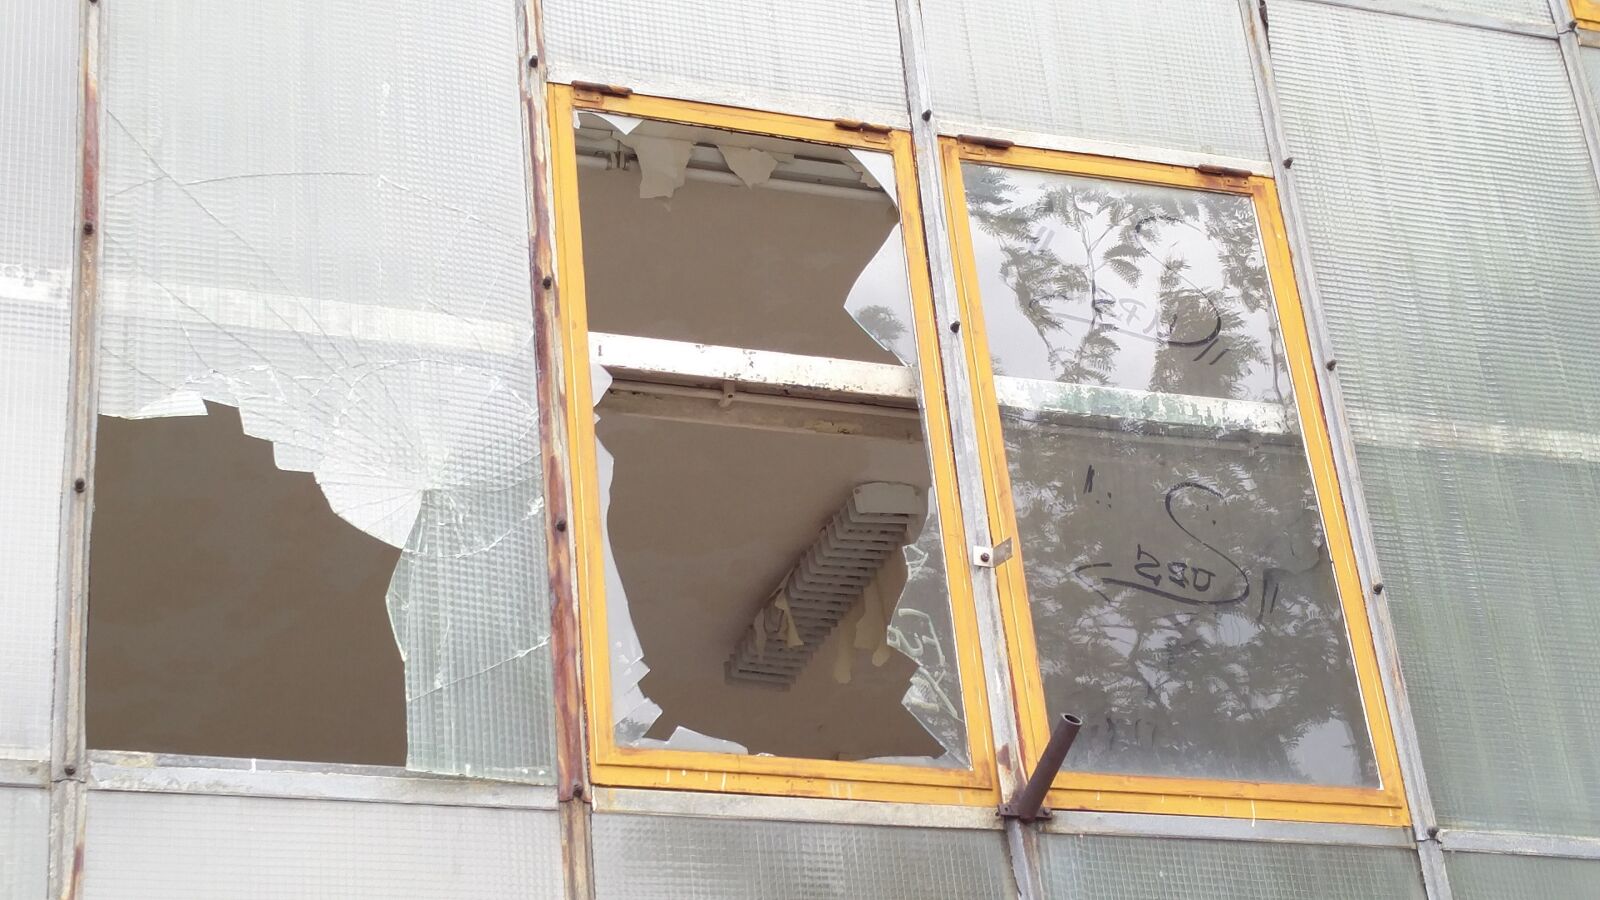 OnePlus 2 sample photo. Broken window, industrial building photography